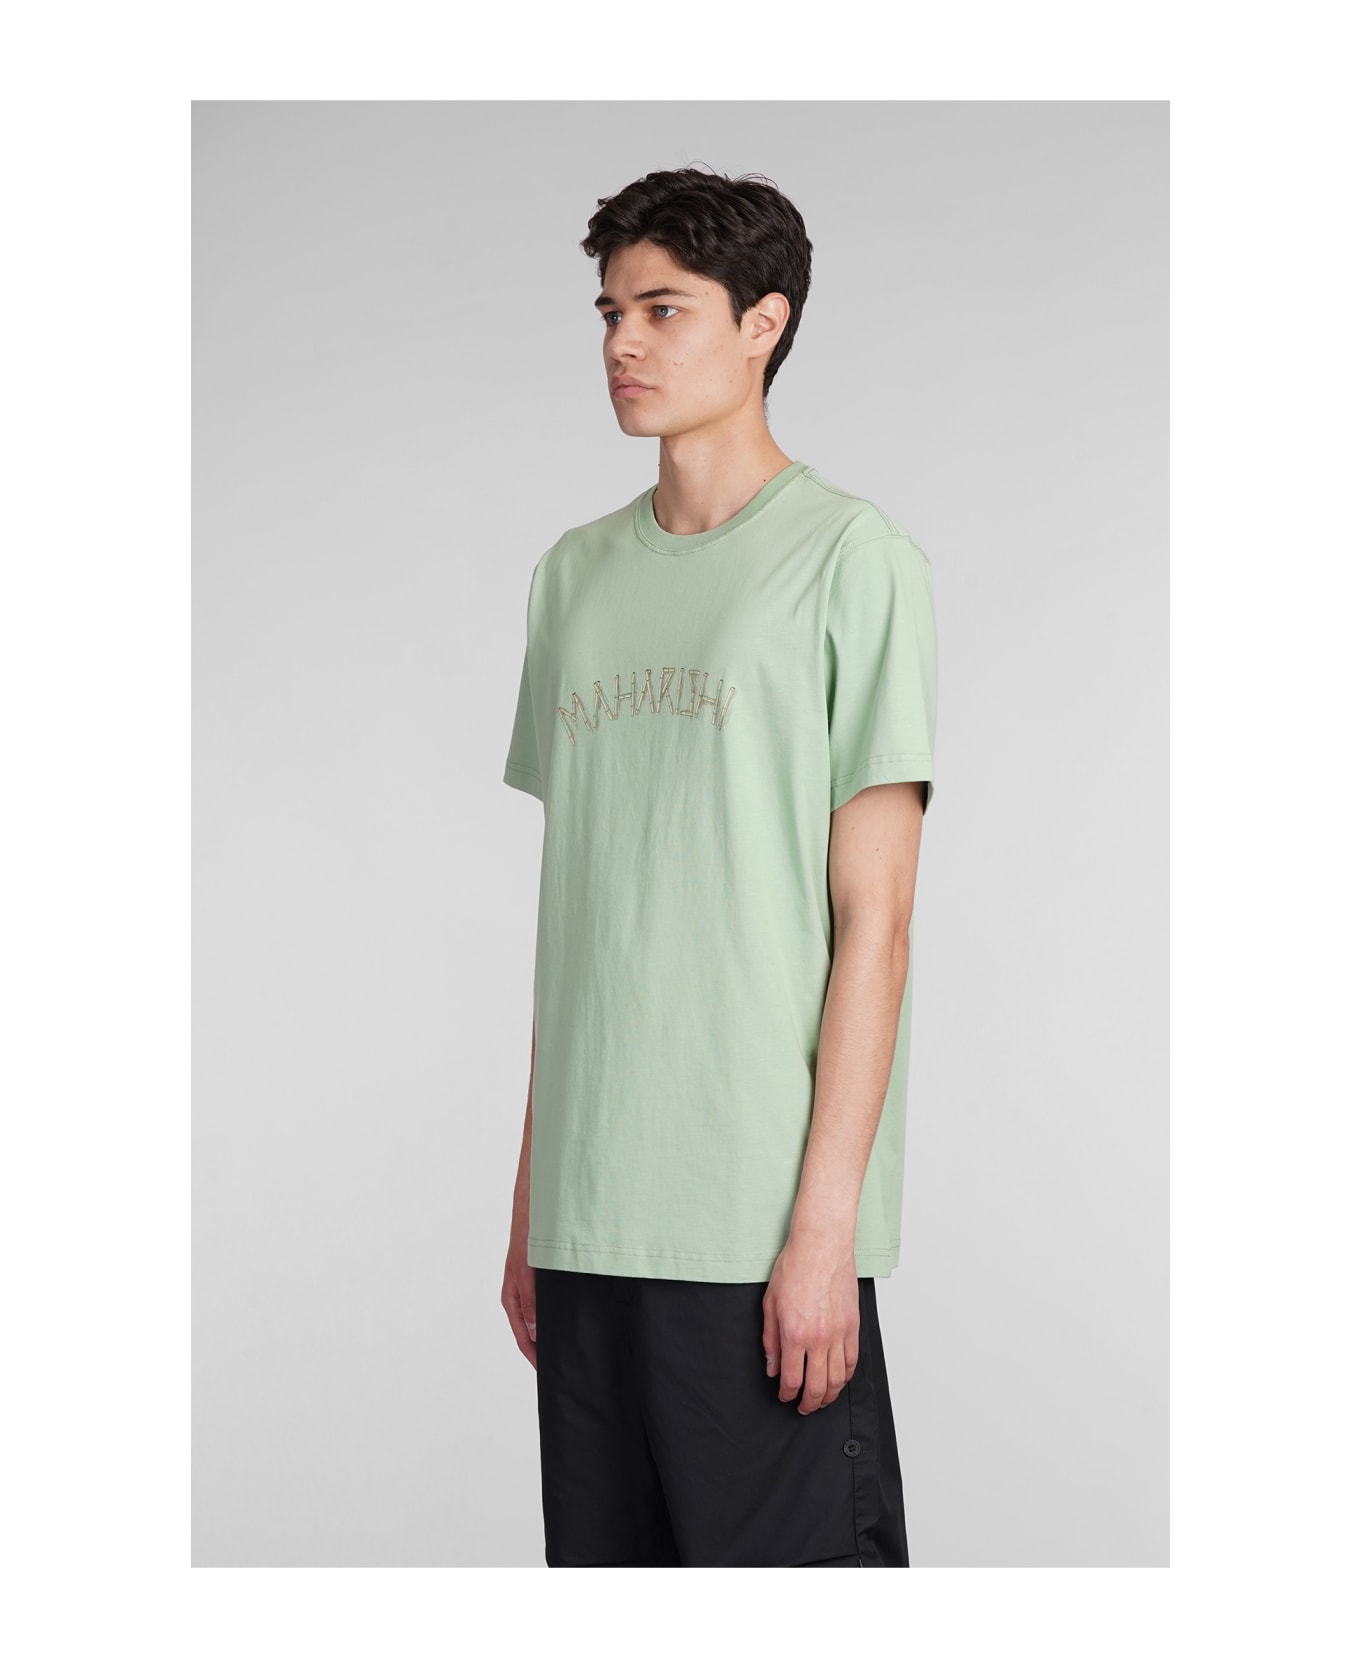 Maharishi T-shirt In Green Cotton - green